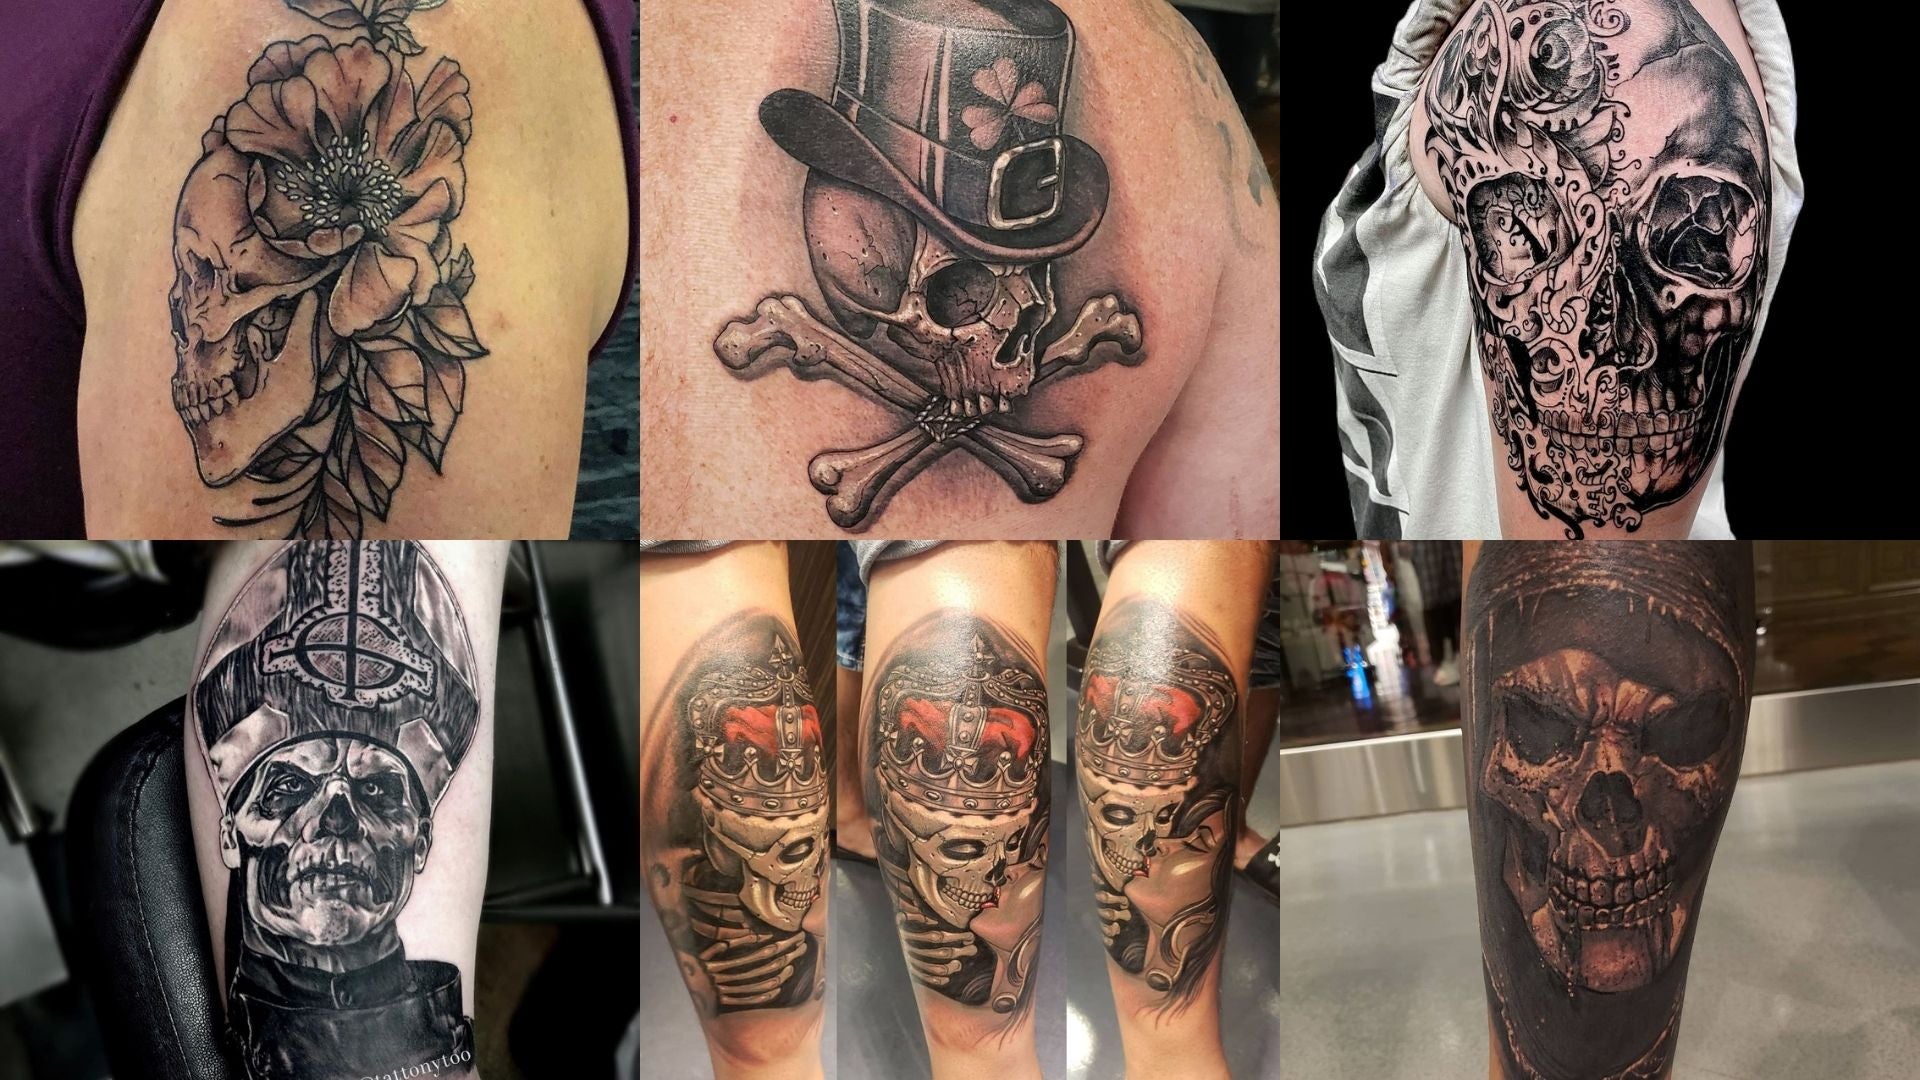 Double skull merge tattoo design - TattooVox Professional Tattoo Designs  Online